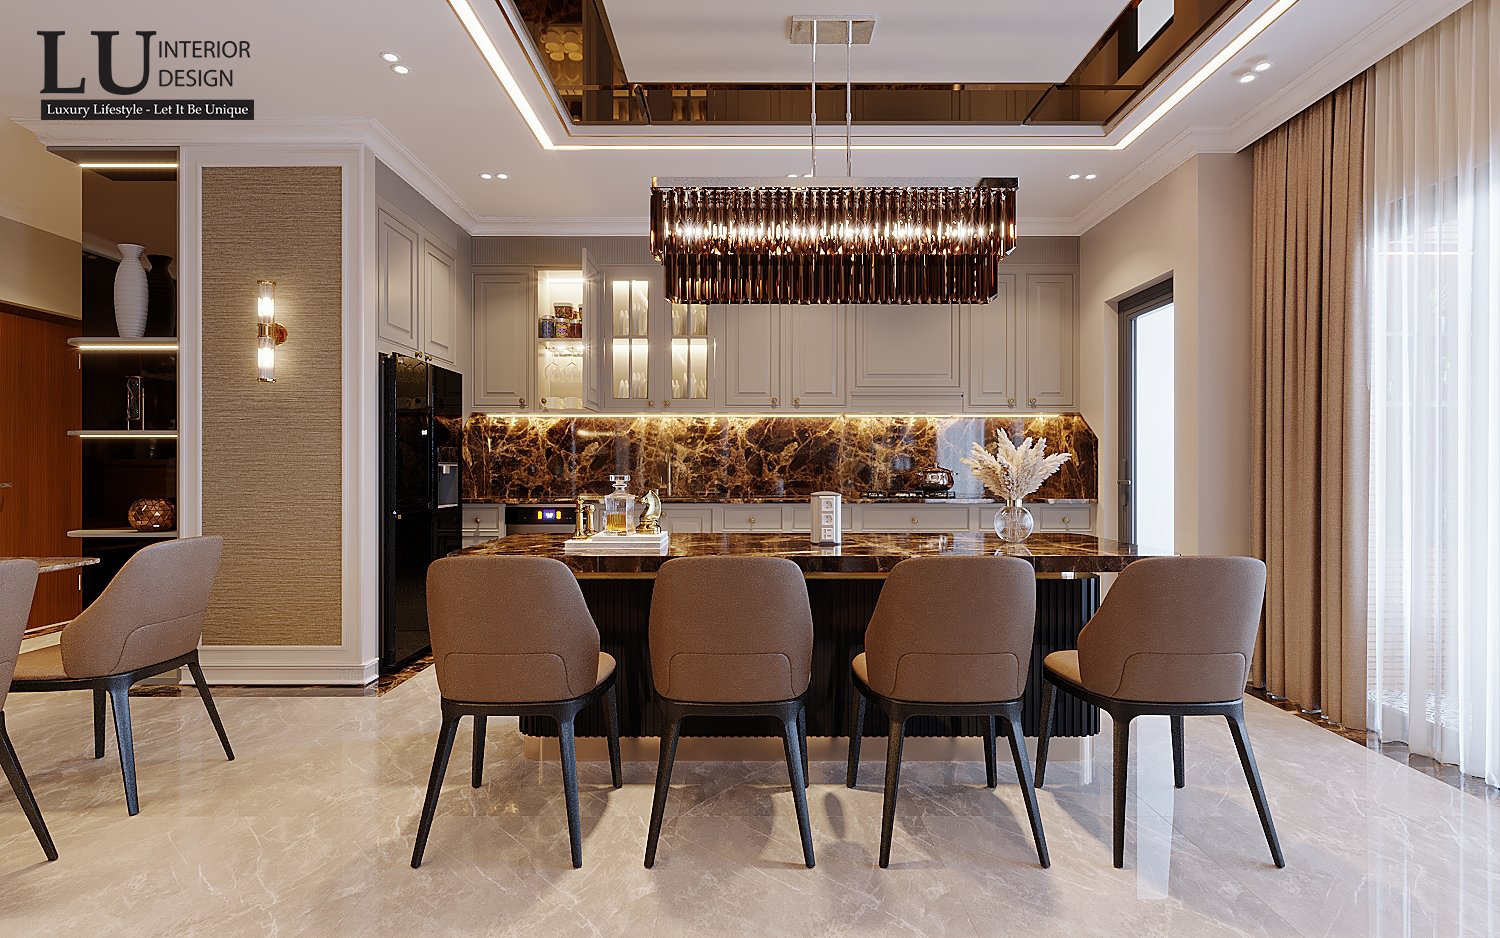 Liền kề phòng khách, đây là không gian nấu ăn với đảo bếp được ốp đá marble đồng bộ với nhau, mang lại vẻ đẹp sang trọng cho khu vực này - Thiết kế căn hộ Saigon Royal bởi LU Design.